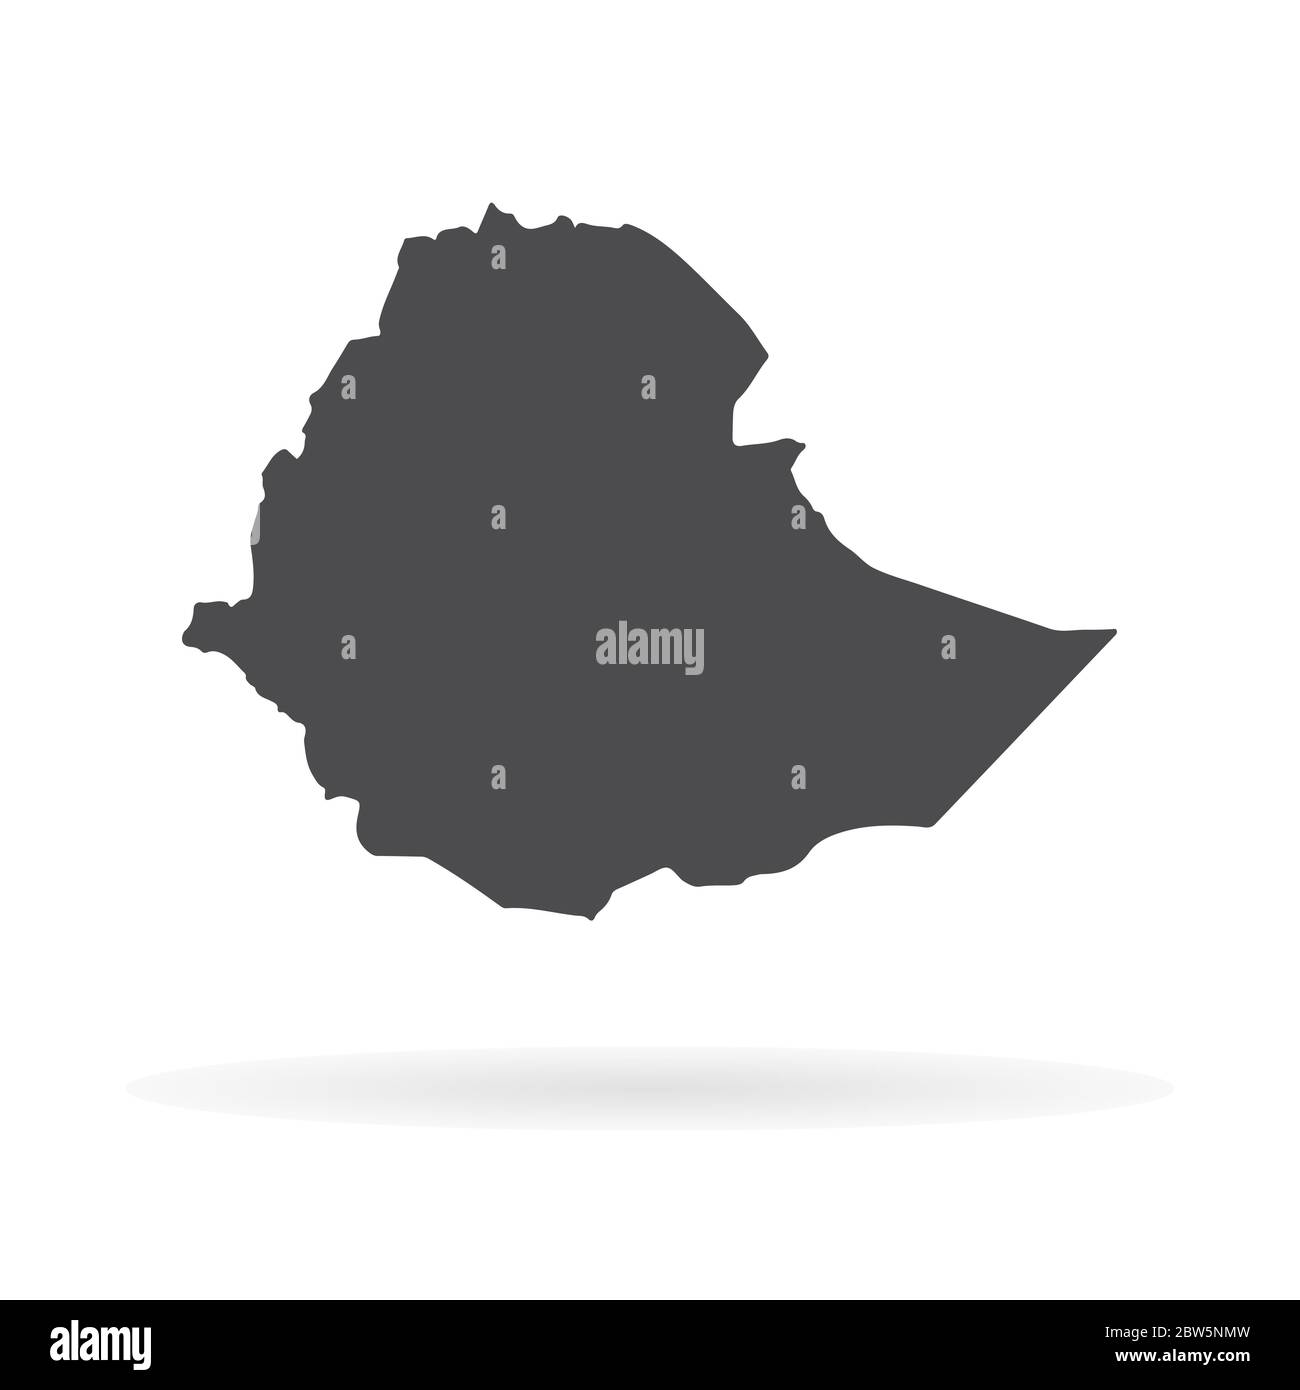 Vektorkarte Äthiopien. Isolierte Vektorgrafik. Schwarz auf weißem Hintergrund. EPS 10-Abbildung. Stock Vektor